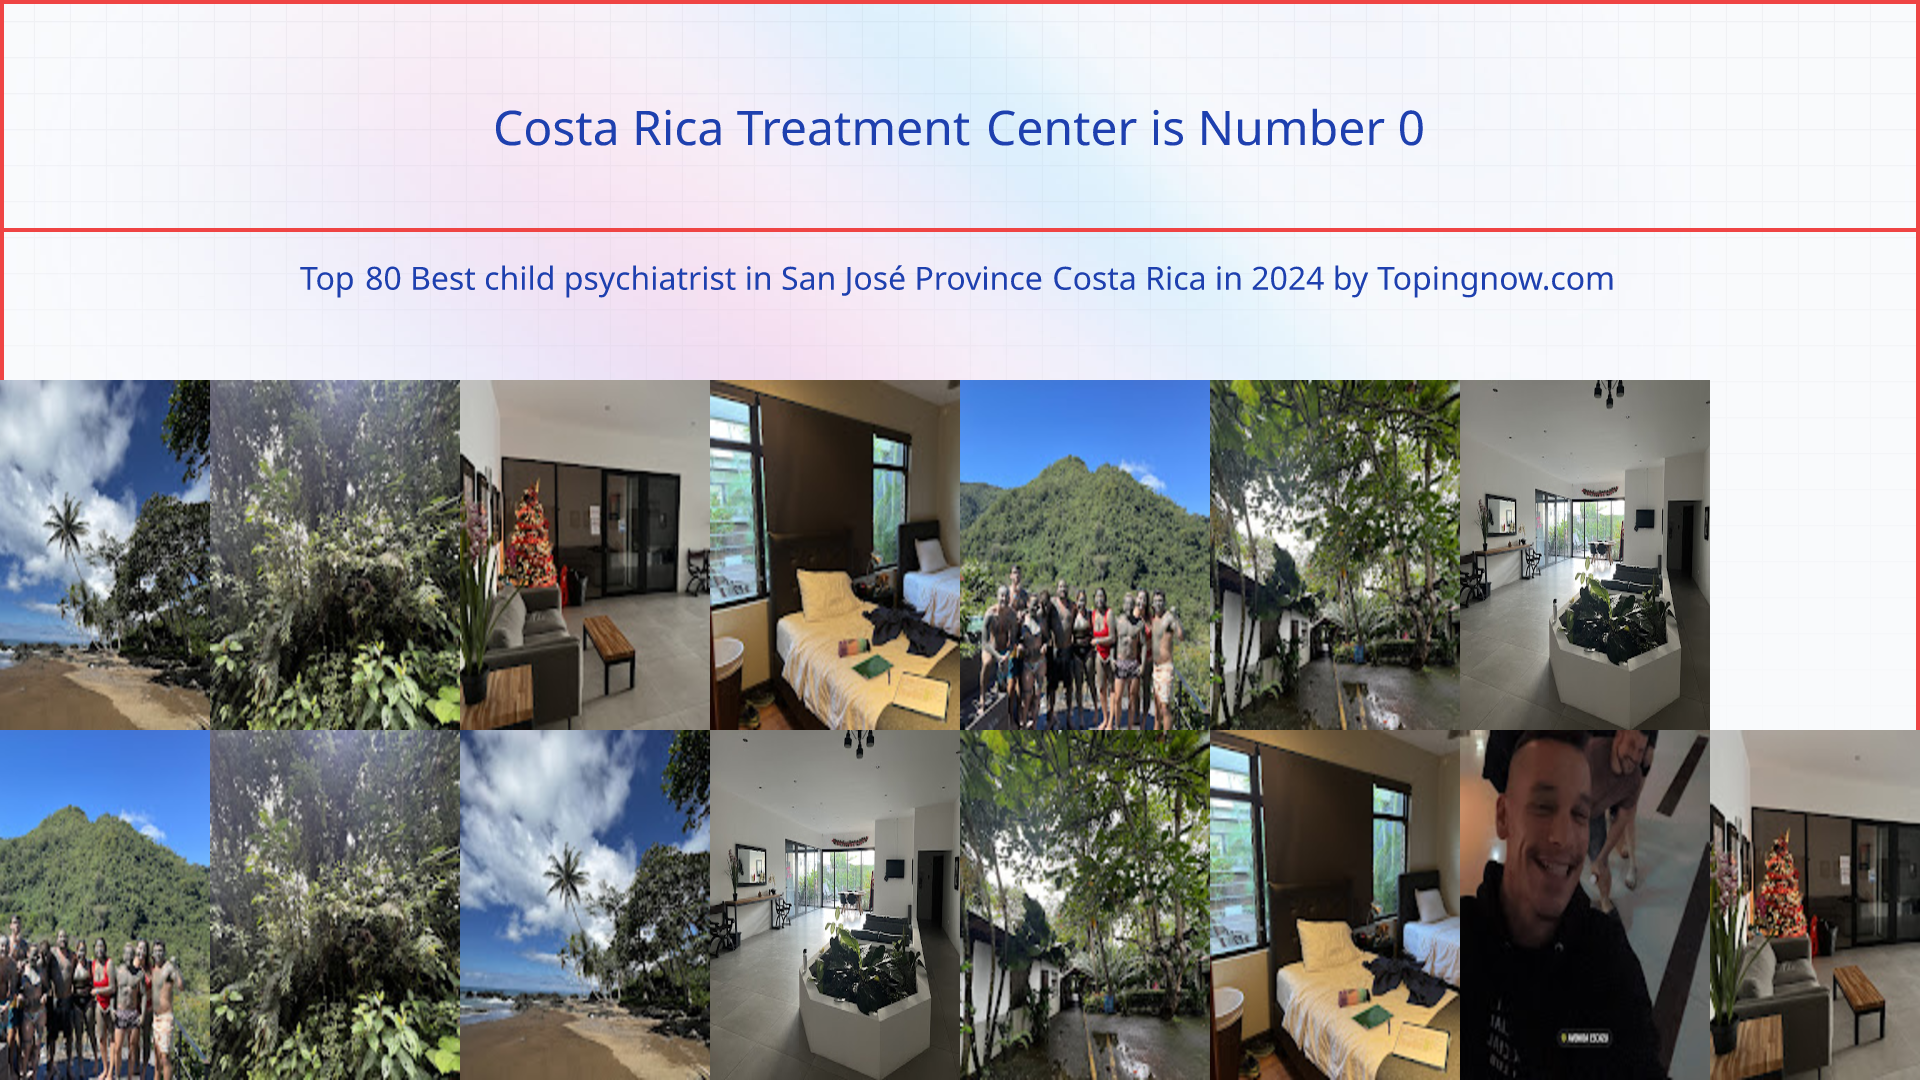 Costa Rica Treatment Center: Top 80 Best child psychiatrist in San José Province Costa Rica in 2024